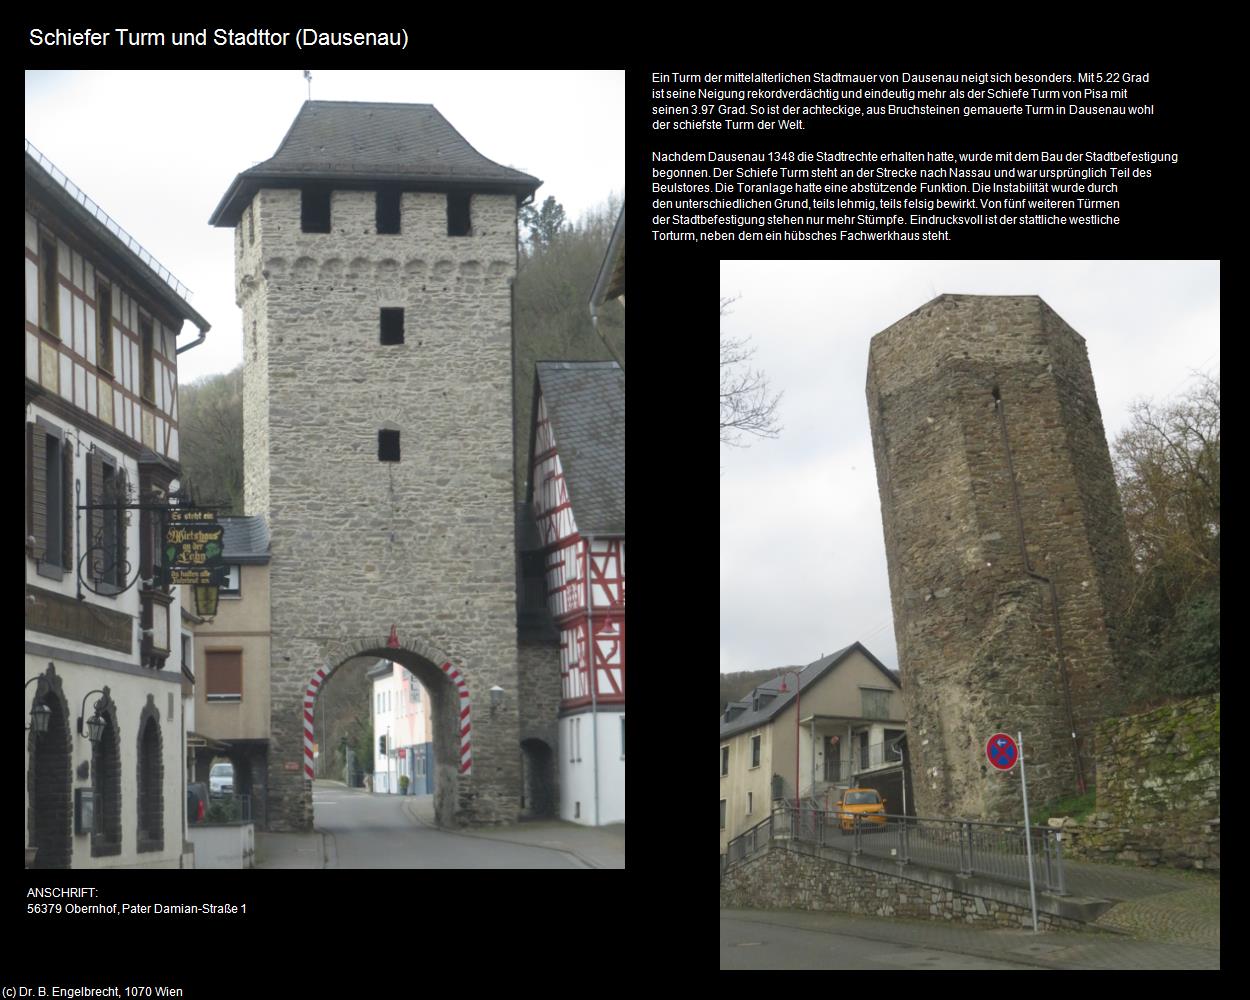 Schiefer Turm und Stadttor (Dausenau (DEU-RP)) in RHEINLAND-PFALZ und SAARLAND